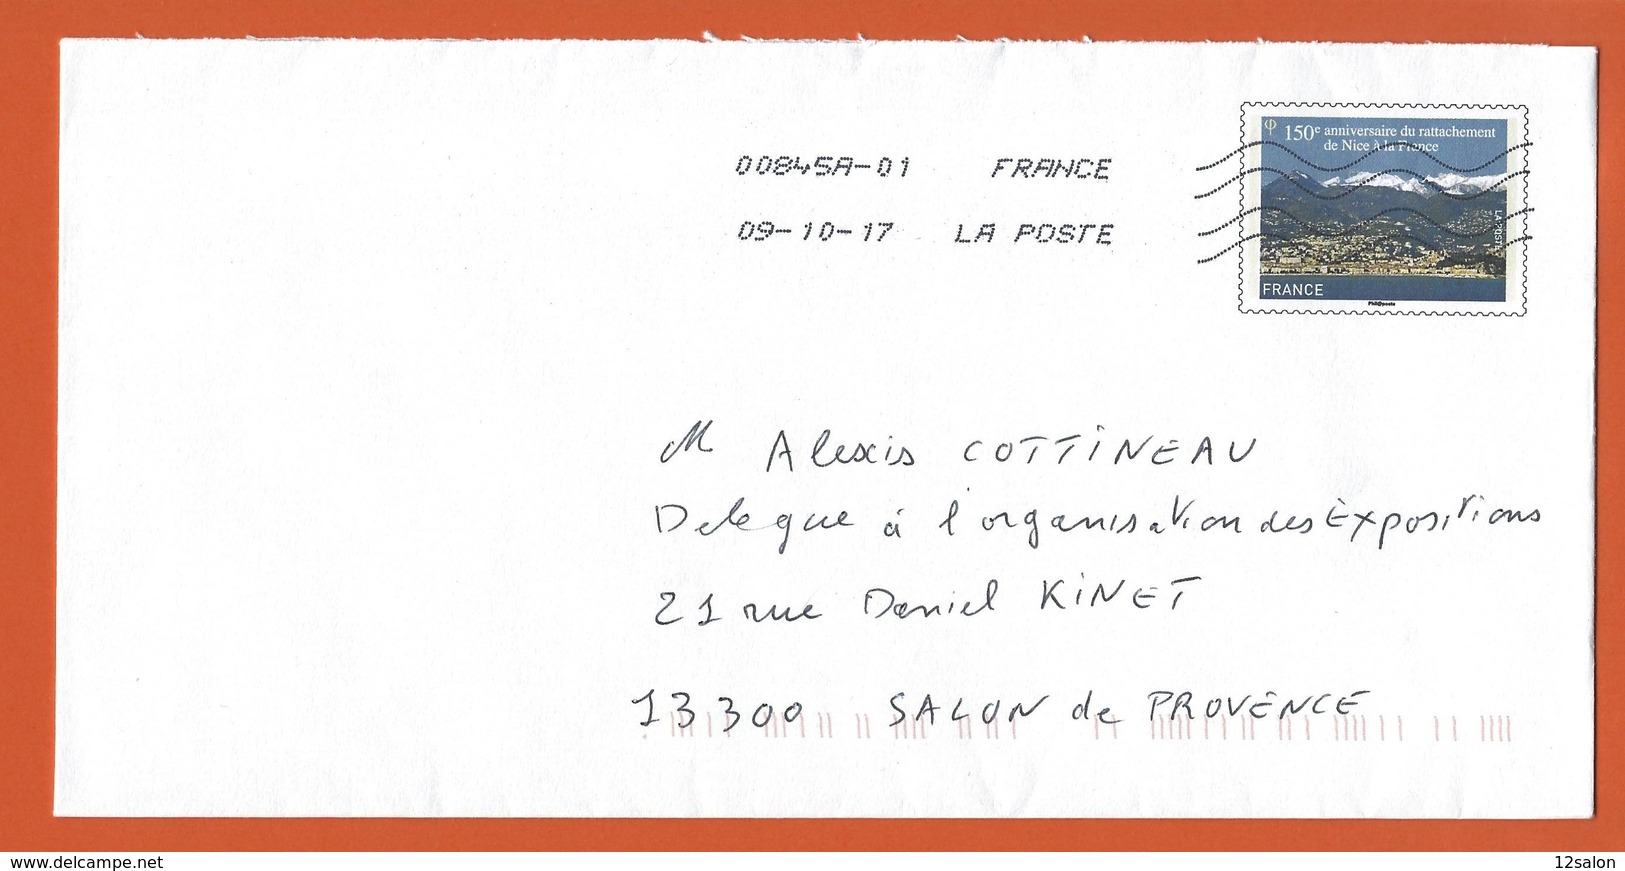 ENTIERS POSTAUX PRET A POSTER  Theme 150 ANNIVERSAIRE RATTACHEMENT DE NICE A LA FRANCE - PAP: Sonstige (1995-...)